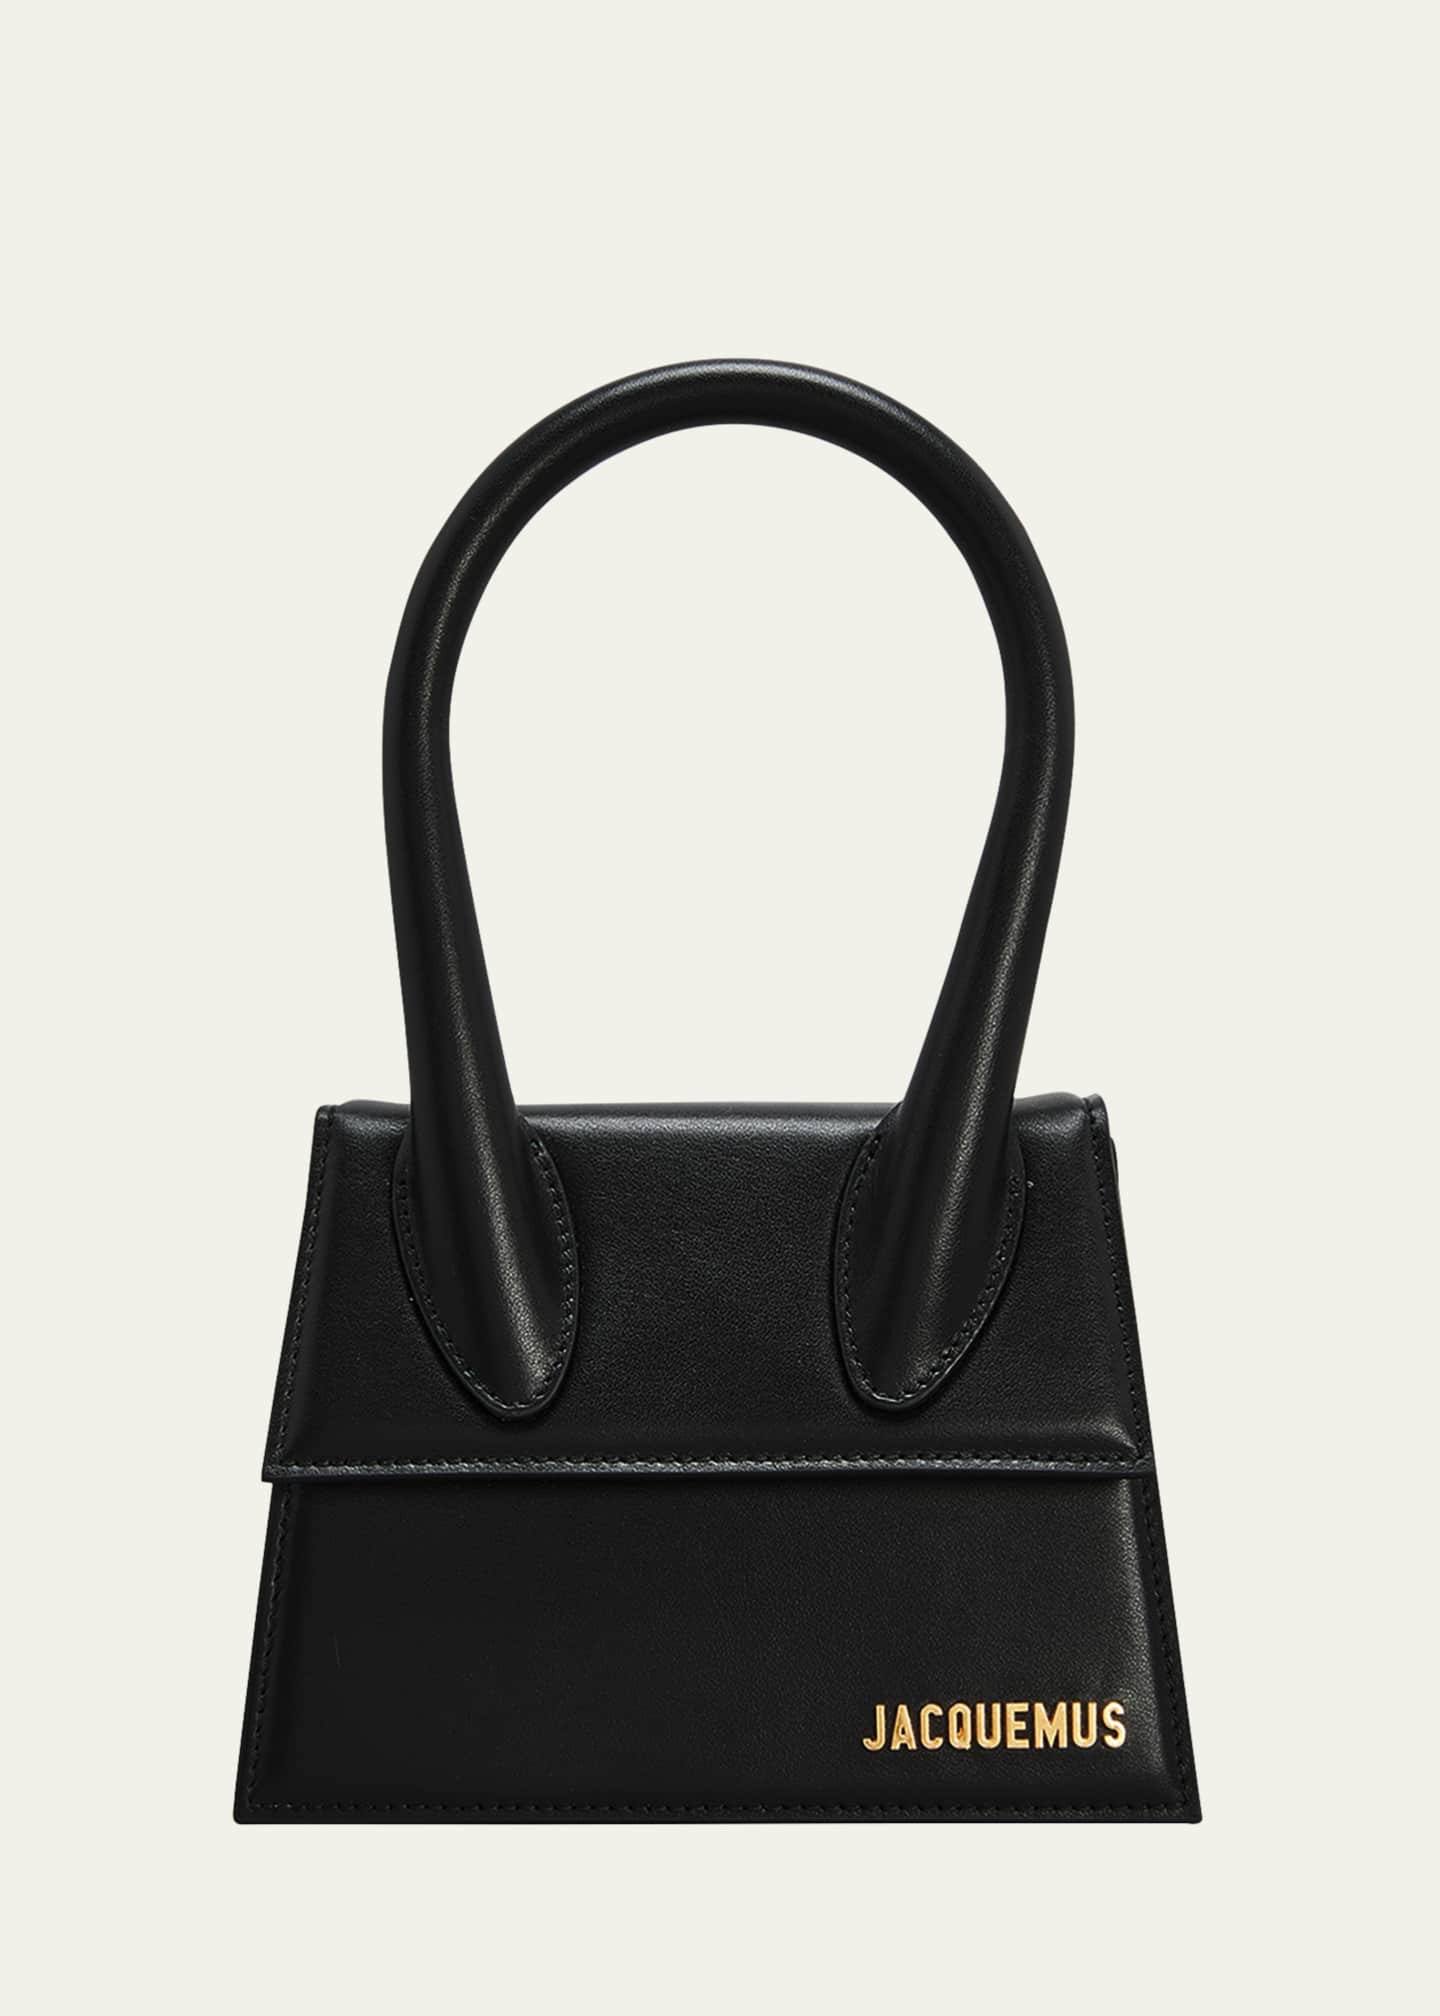 Authentic Jacquemus Le Chiquito mini bag